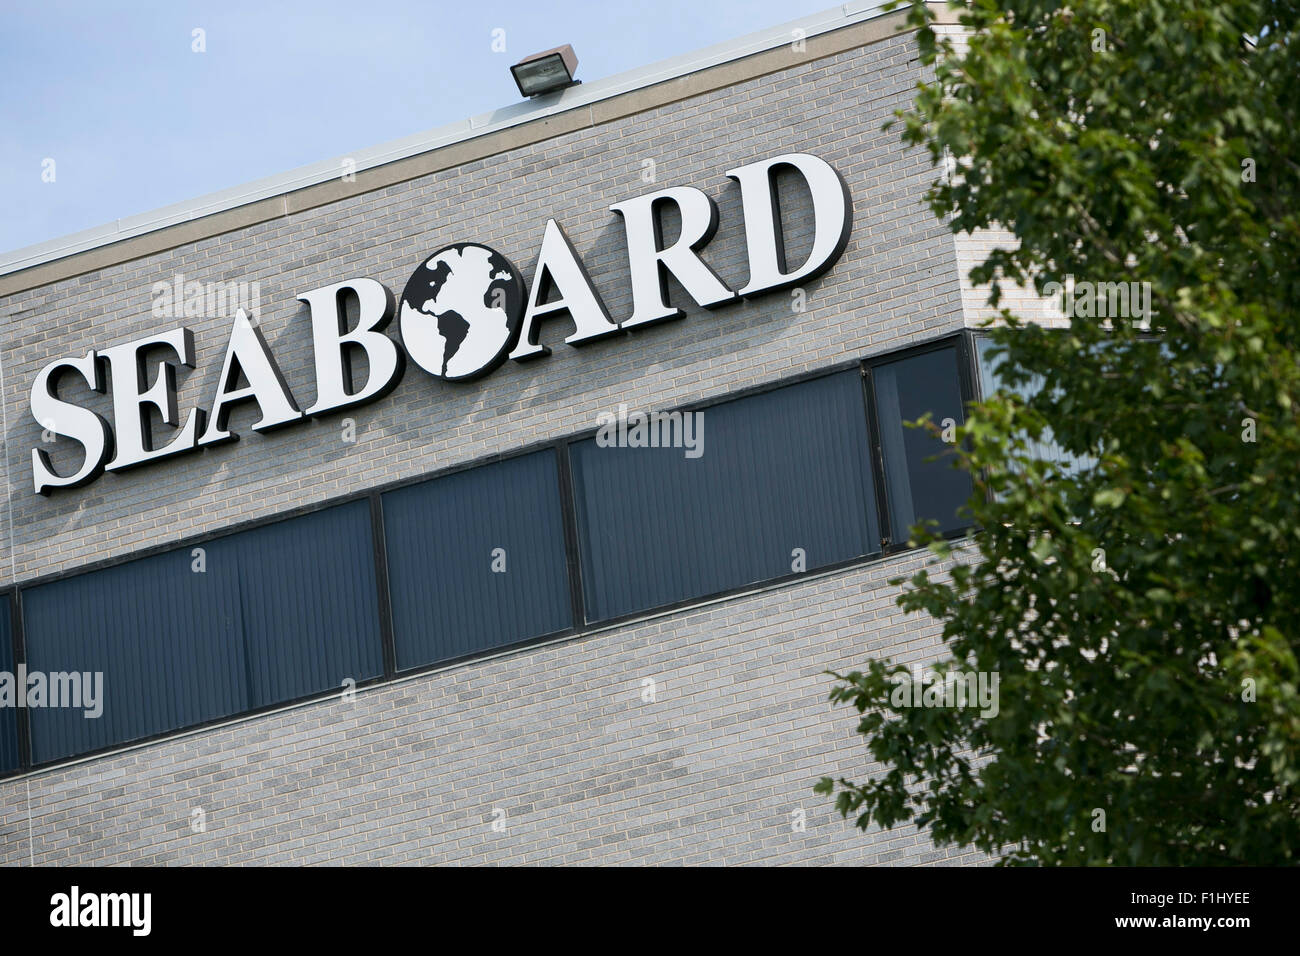 Ein Logo-Zeichen vor dem Hauptsitz der Seaboard Corporation in Merriam, Kansas am 23. August 2015. Stockfoto